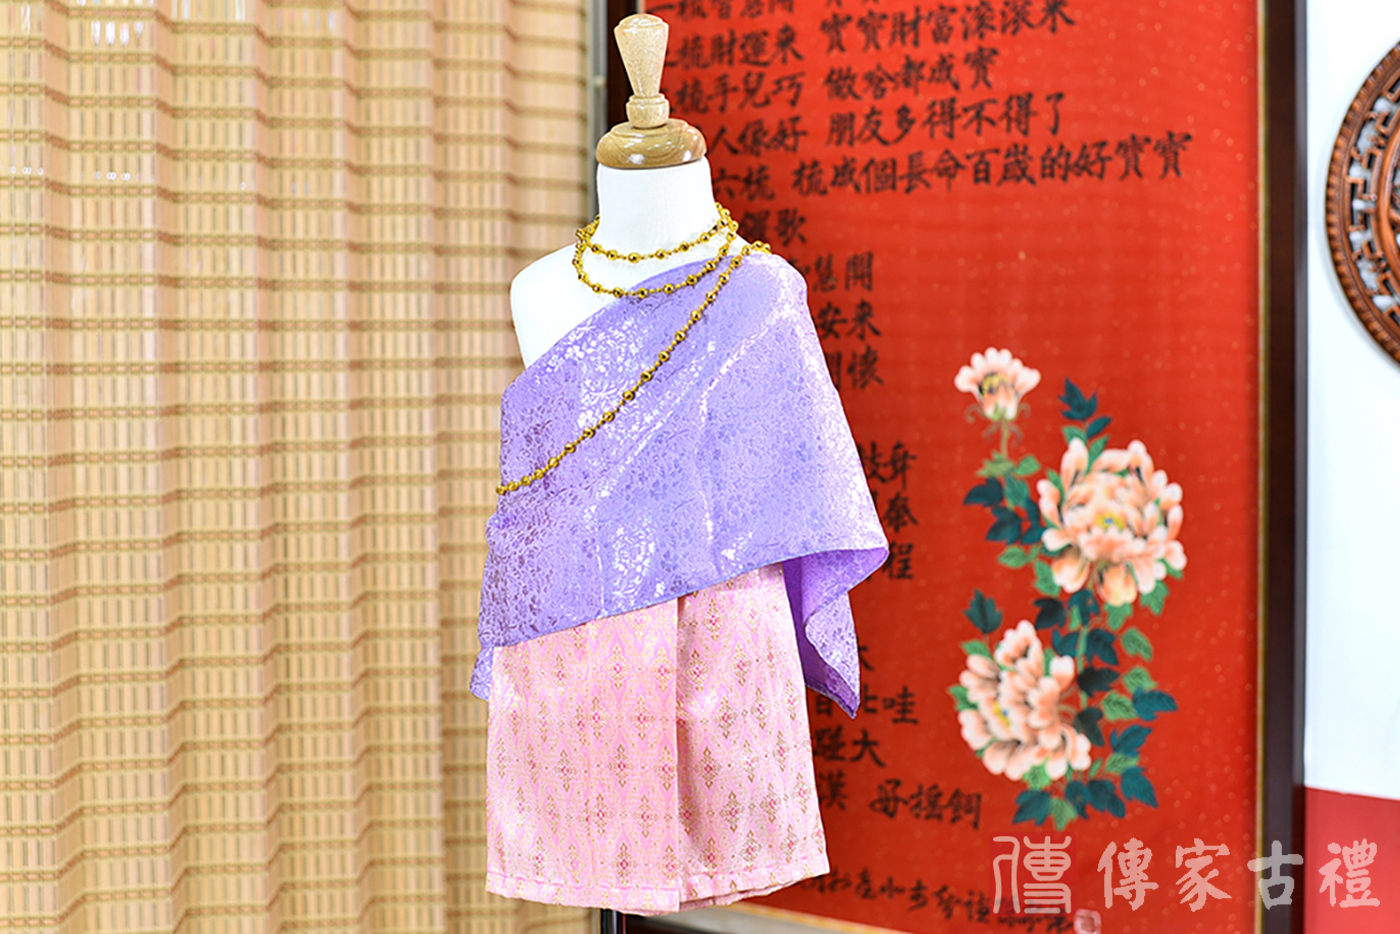 2024-02-22小孩皇室泰服古裝禮服。淺紫色的紋路披肩上衣搭配淡紅色泰國紋路圖案裙裝的泰式古裝禮服。照片集